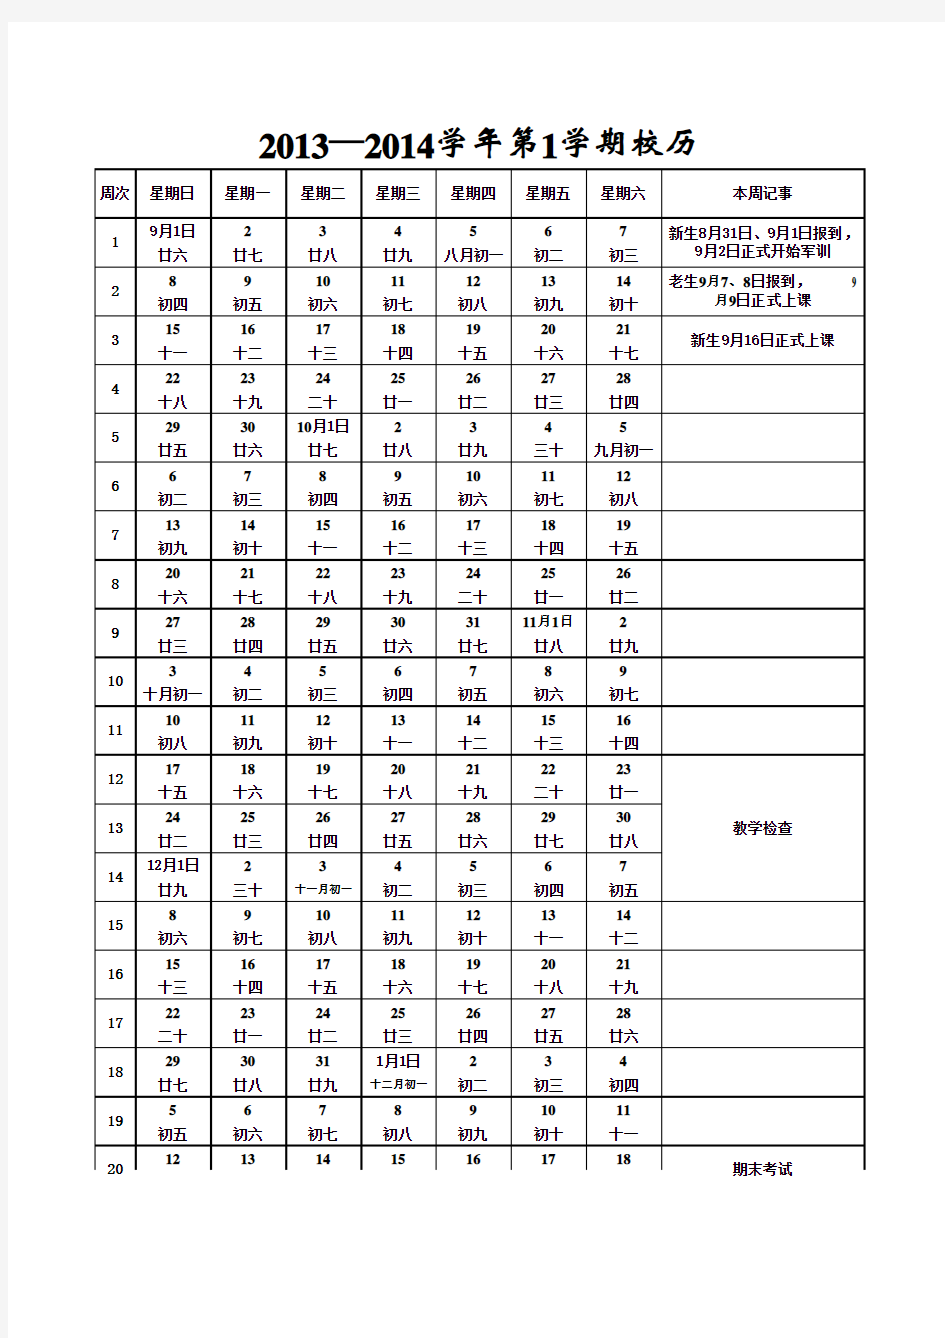 副本2013-2014-1校历